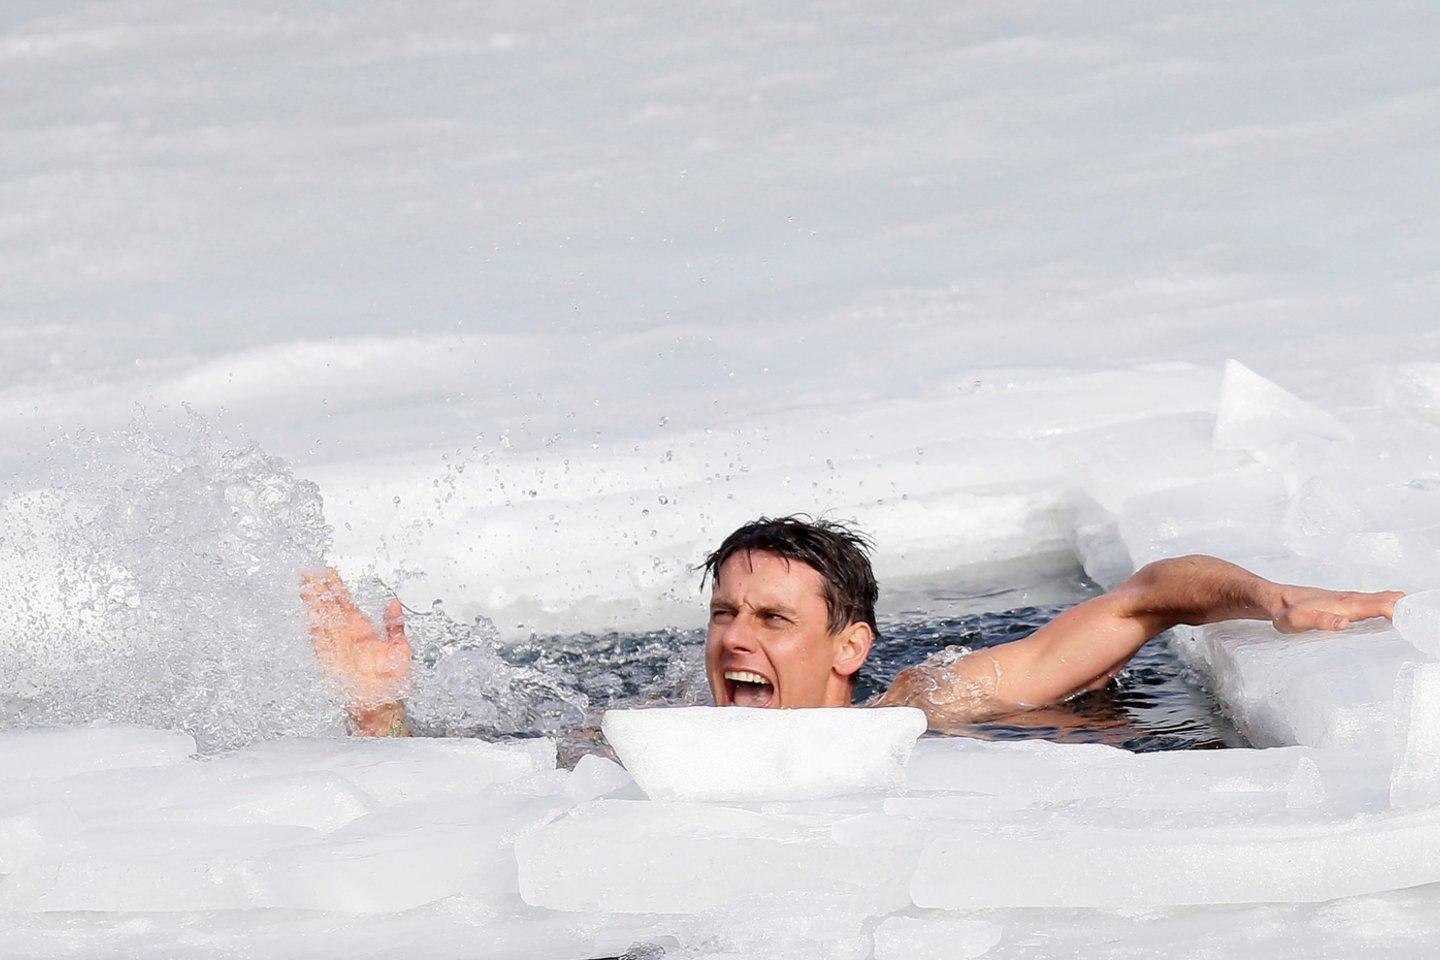  Čekas Davidas Venclas ryžosi neįprastam rekordui – jis antradienį užšalusiame ežere prie Taplicės panėręs po ledu įveikė daugiau kaip 80 metrų atstumą, pranešė naujienų agentūra CTK.<br> Reuters/Scanpix nuotr.